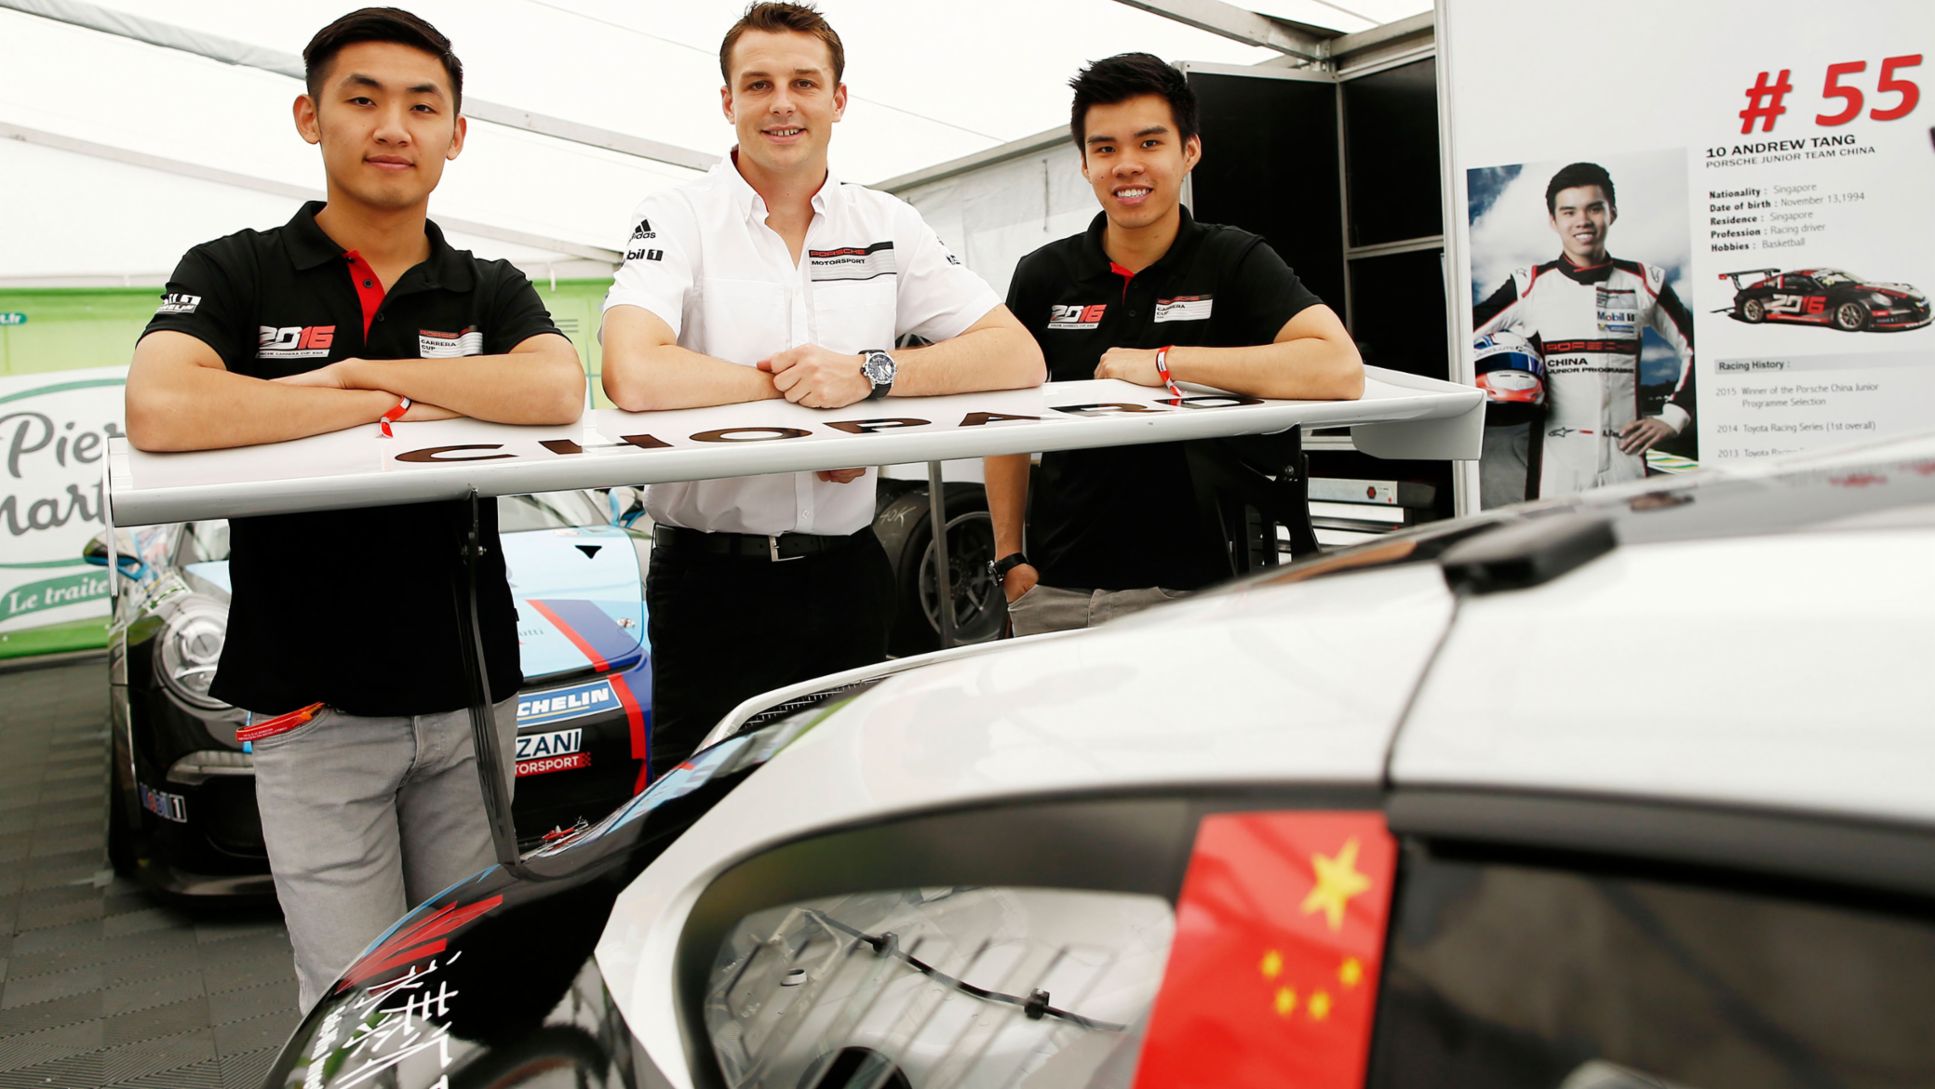 Zhang Dasheng, Earl Bamber, Andrew Tang, race driver, l-r, Porsche Mobil 1 Supercup, Hockenheim, 2016, Porsche AG